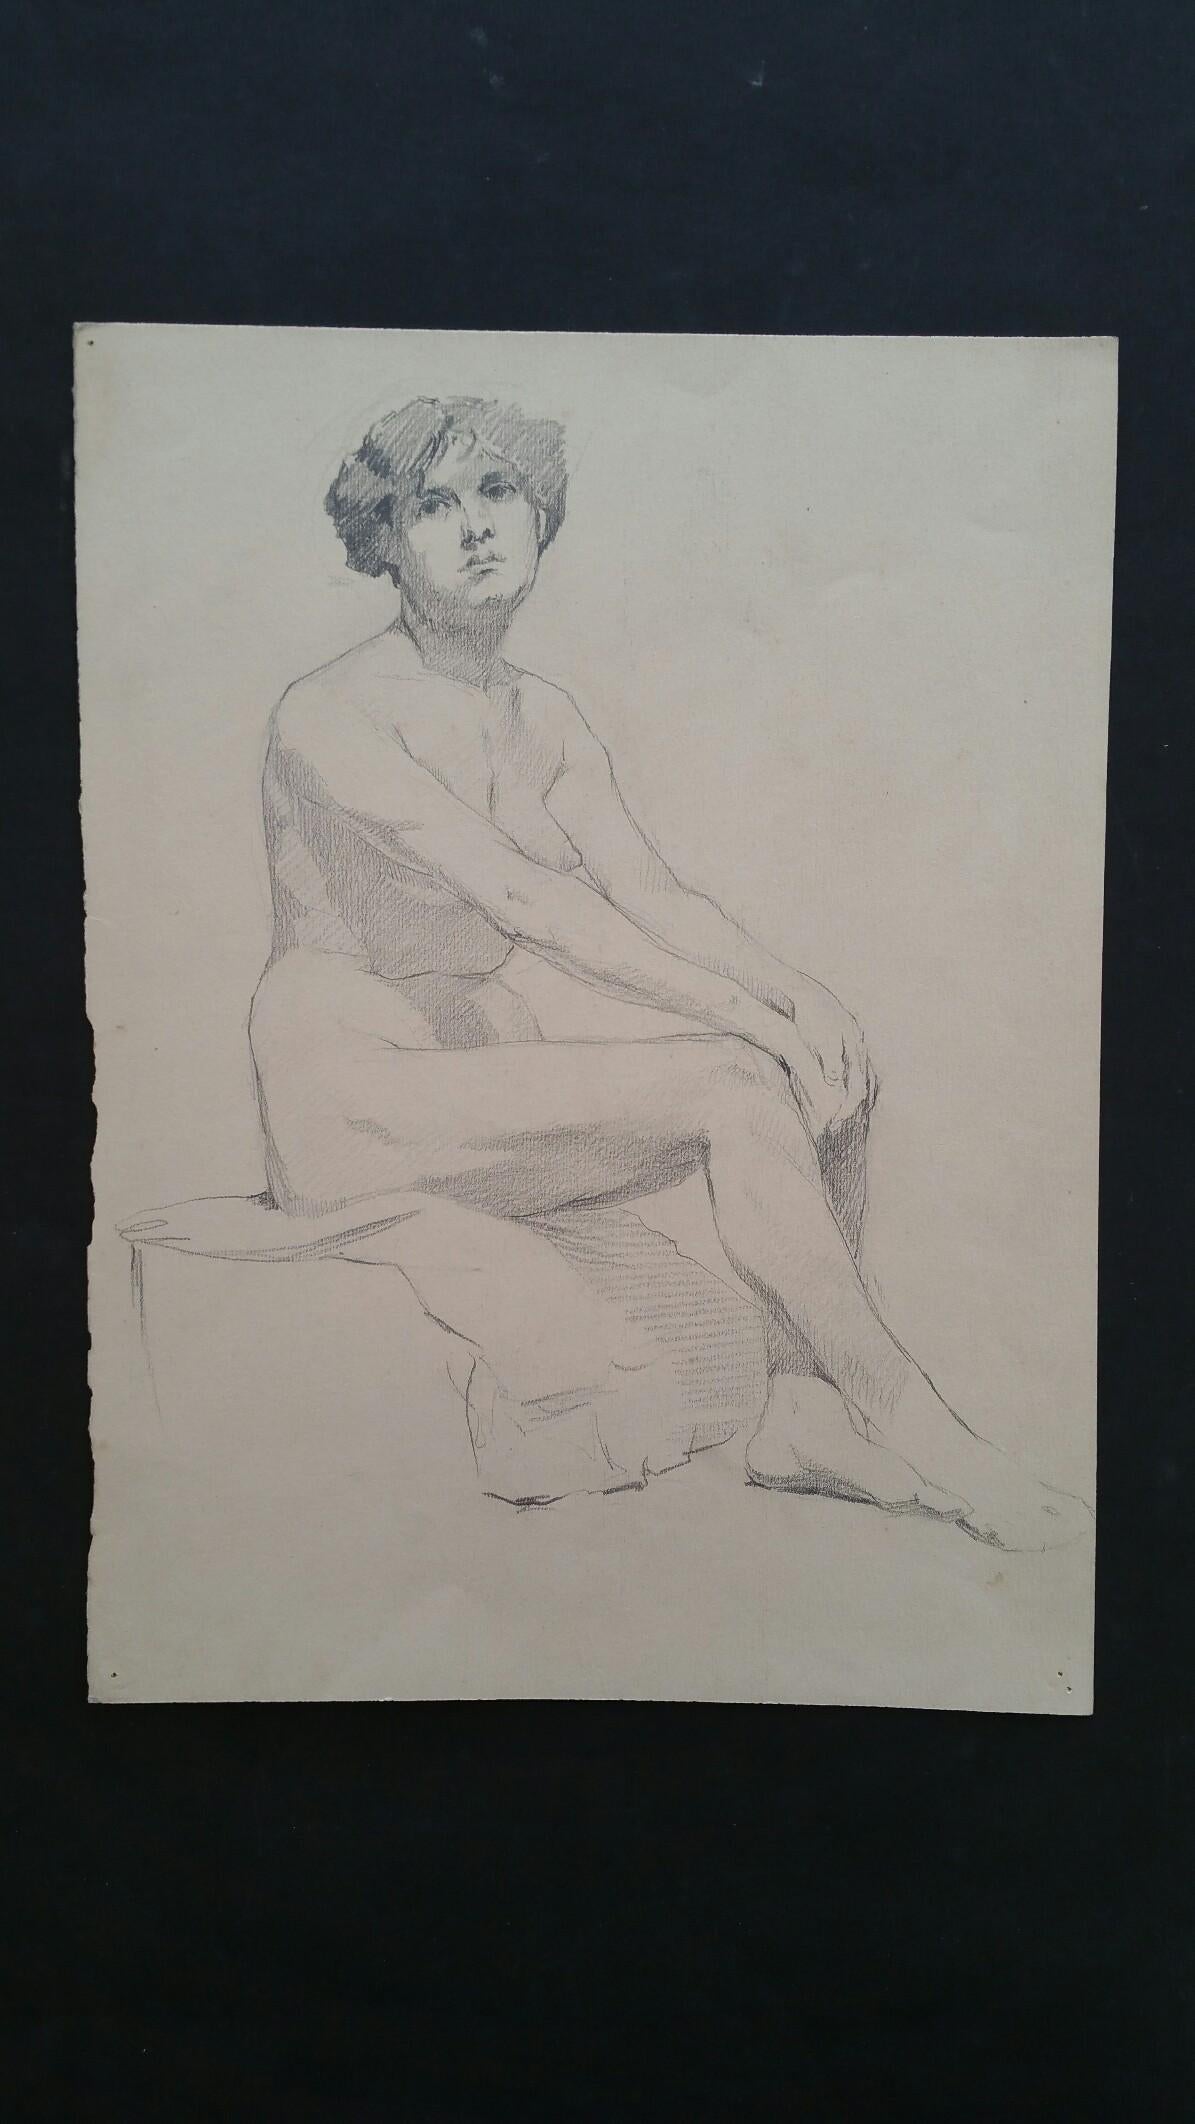 Croquis de portrait en graphite anglais d'une femme nue assis de profil - Art de Henry George Moon